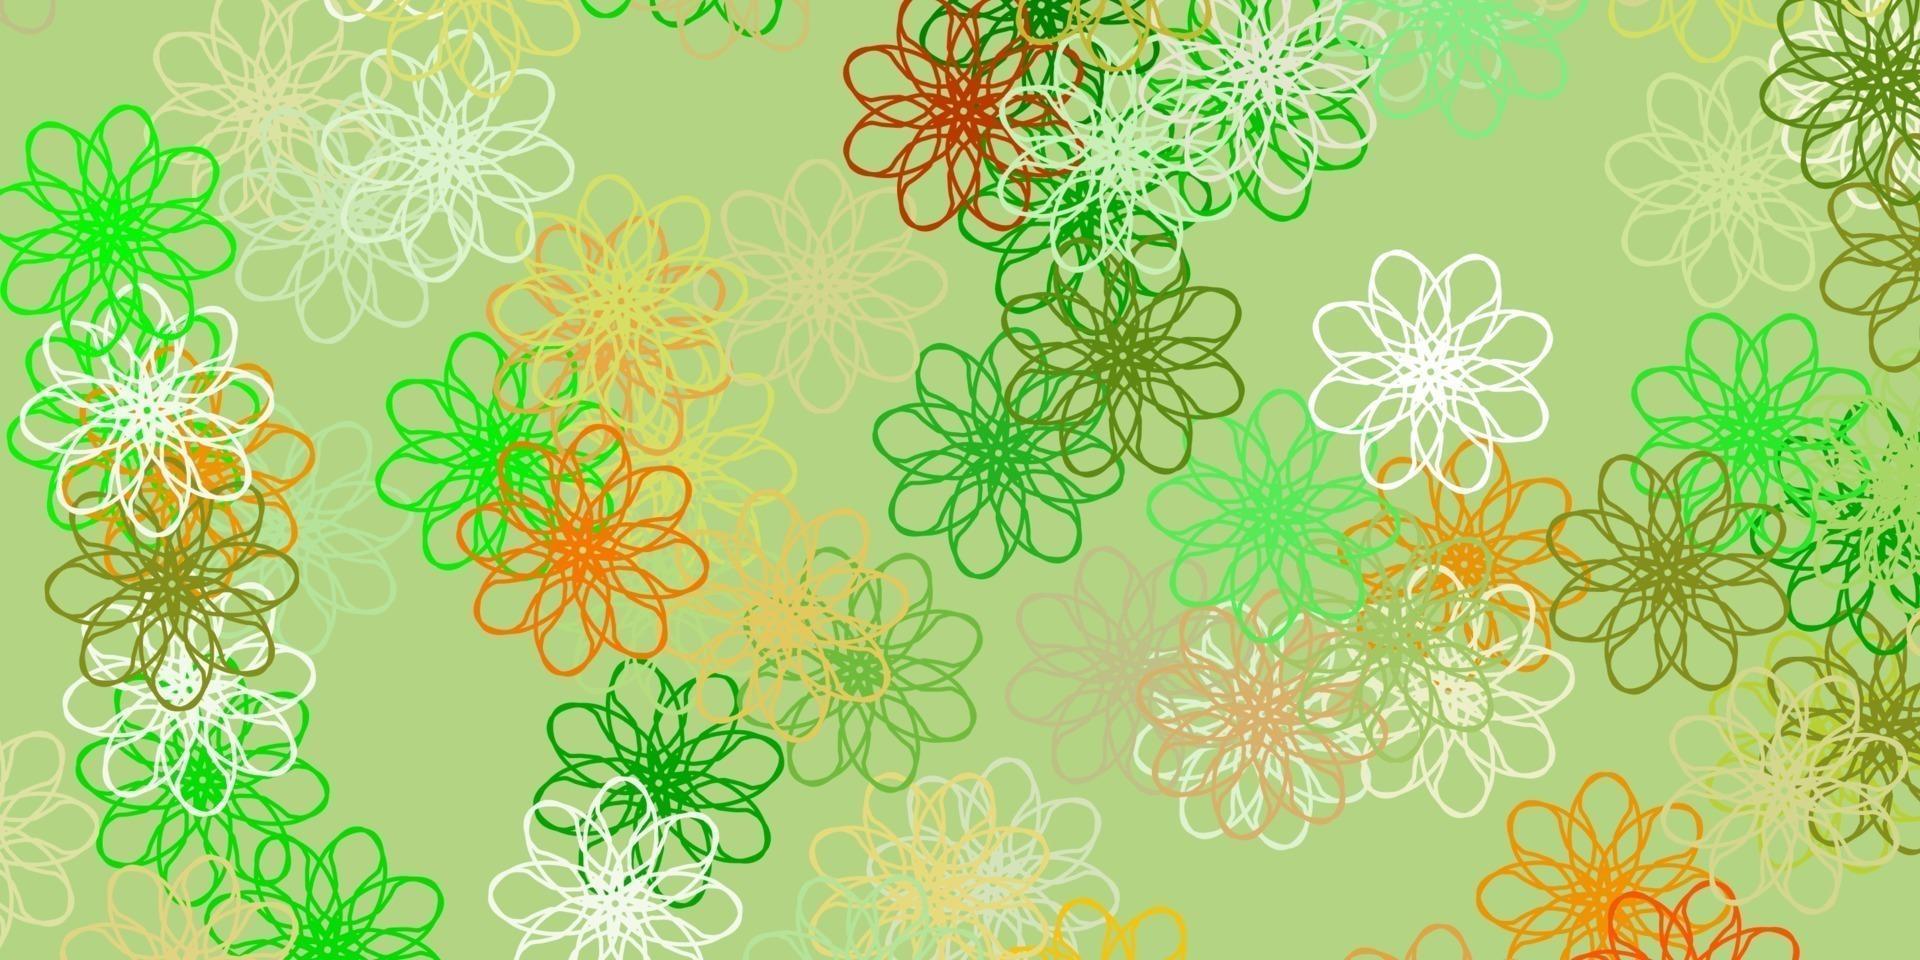 Fondo de doodle de vector verde claro, amarillo con flores.